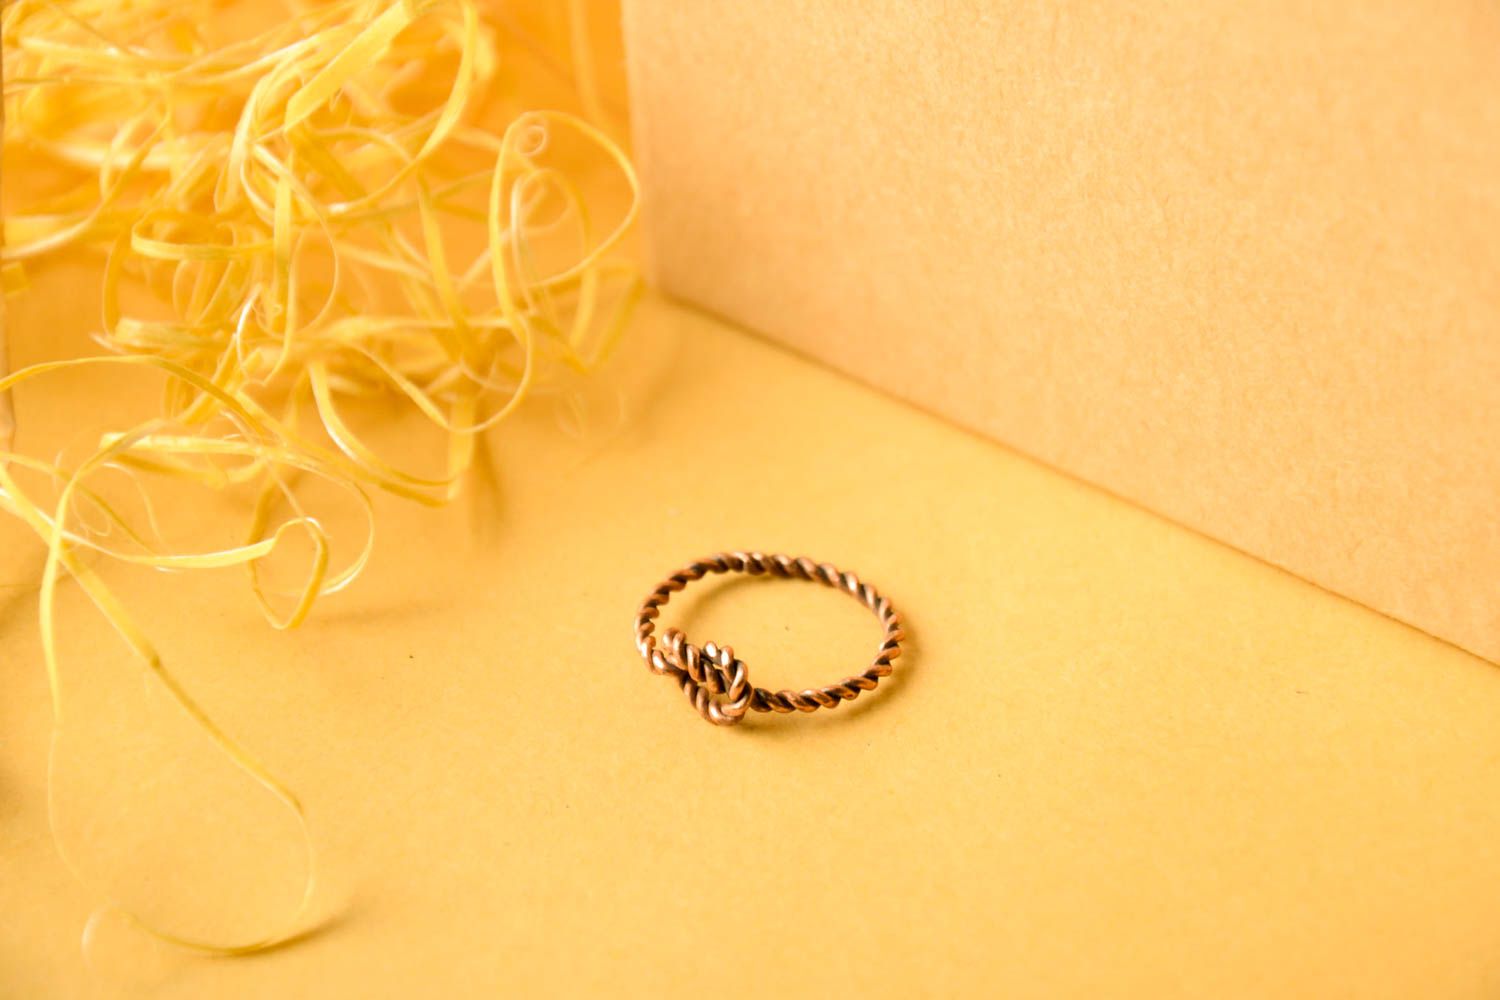 Необычное кольцо ручной работы женское кольцо и медной проволоки красивое кольцо фото 1